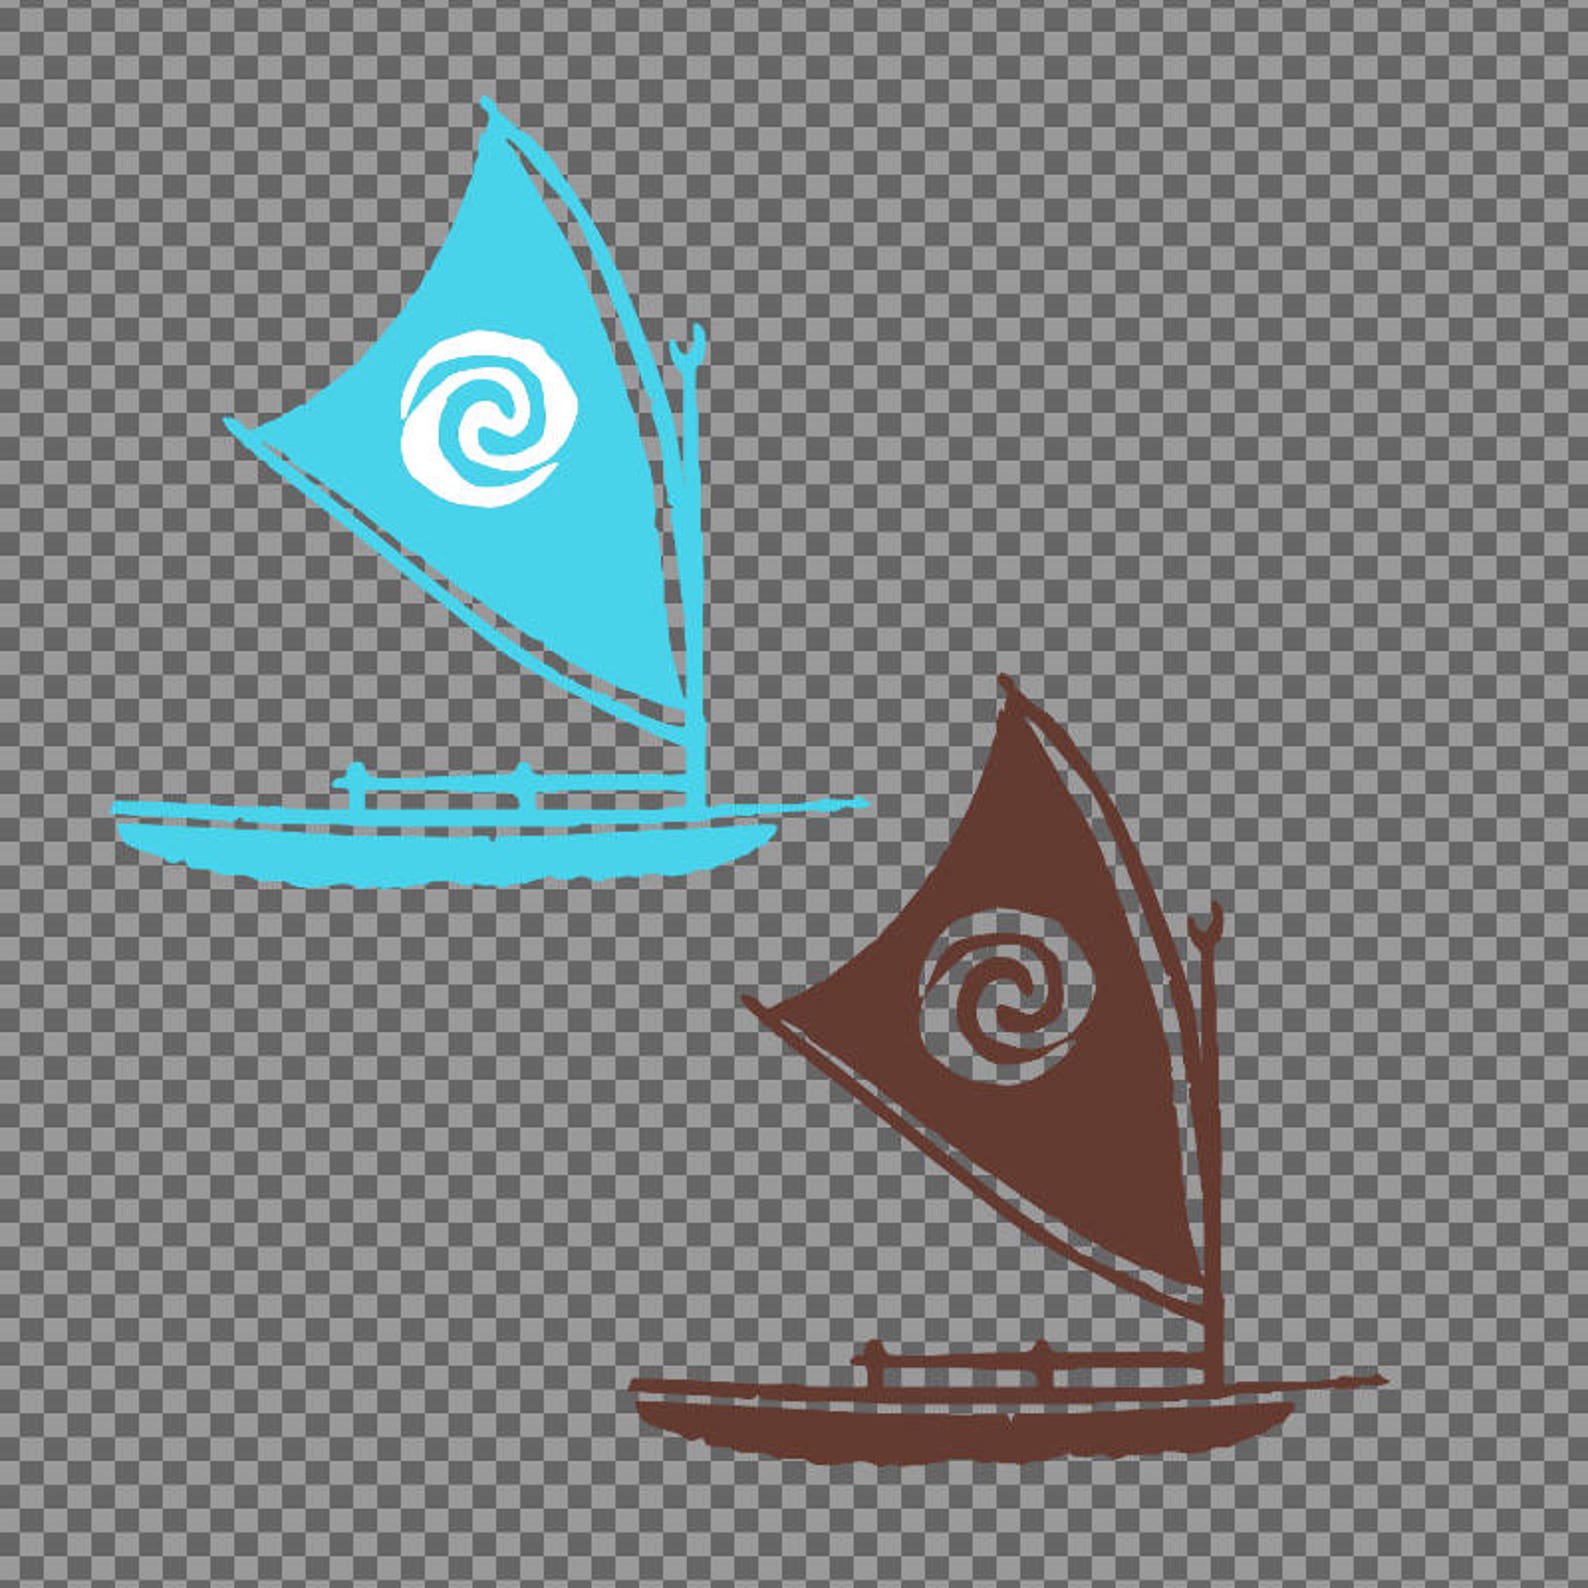 moana sailboat clipart